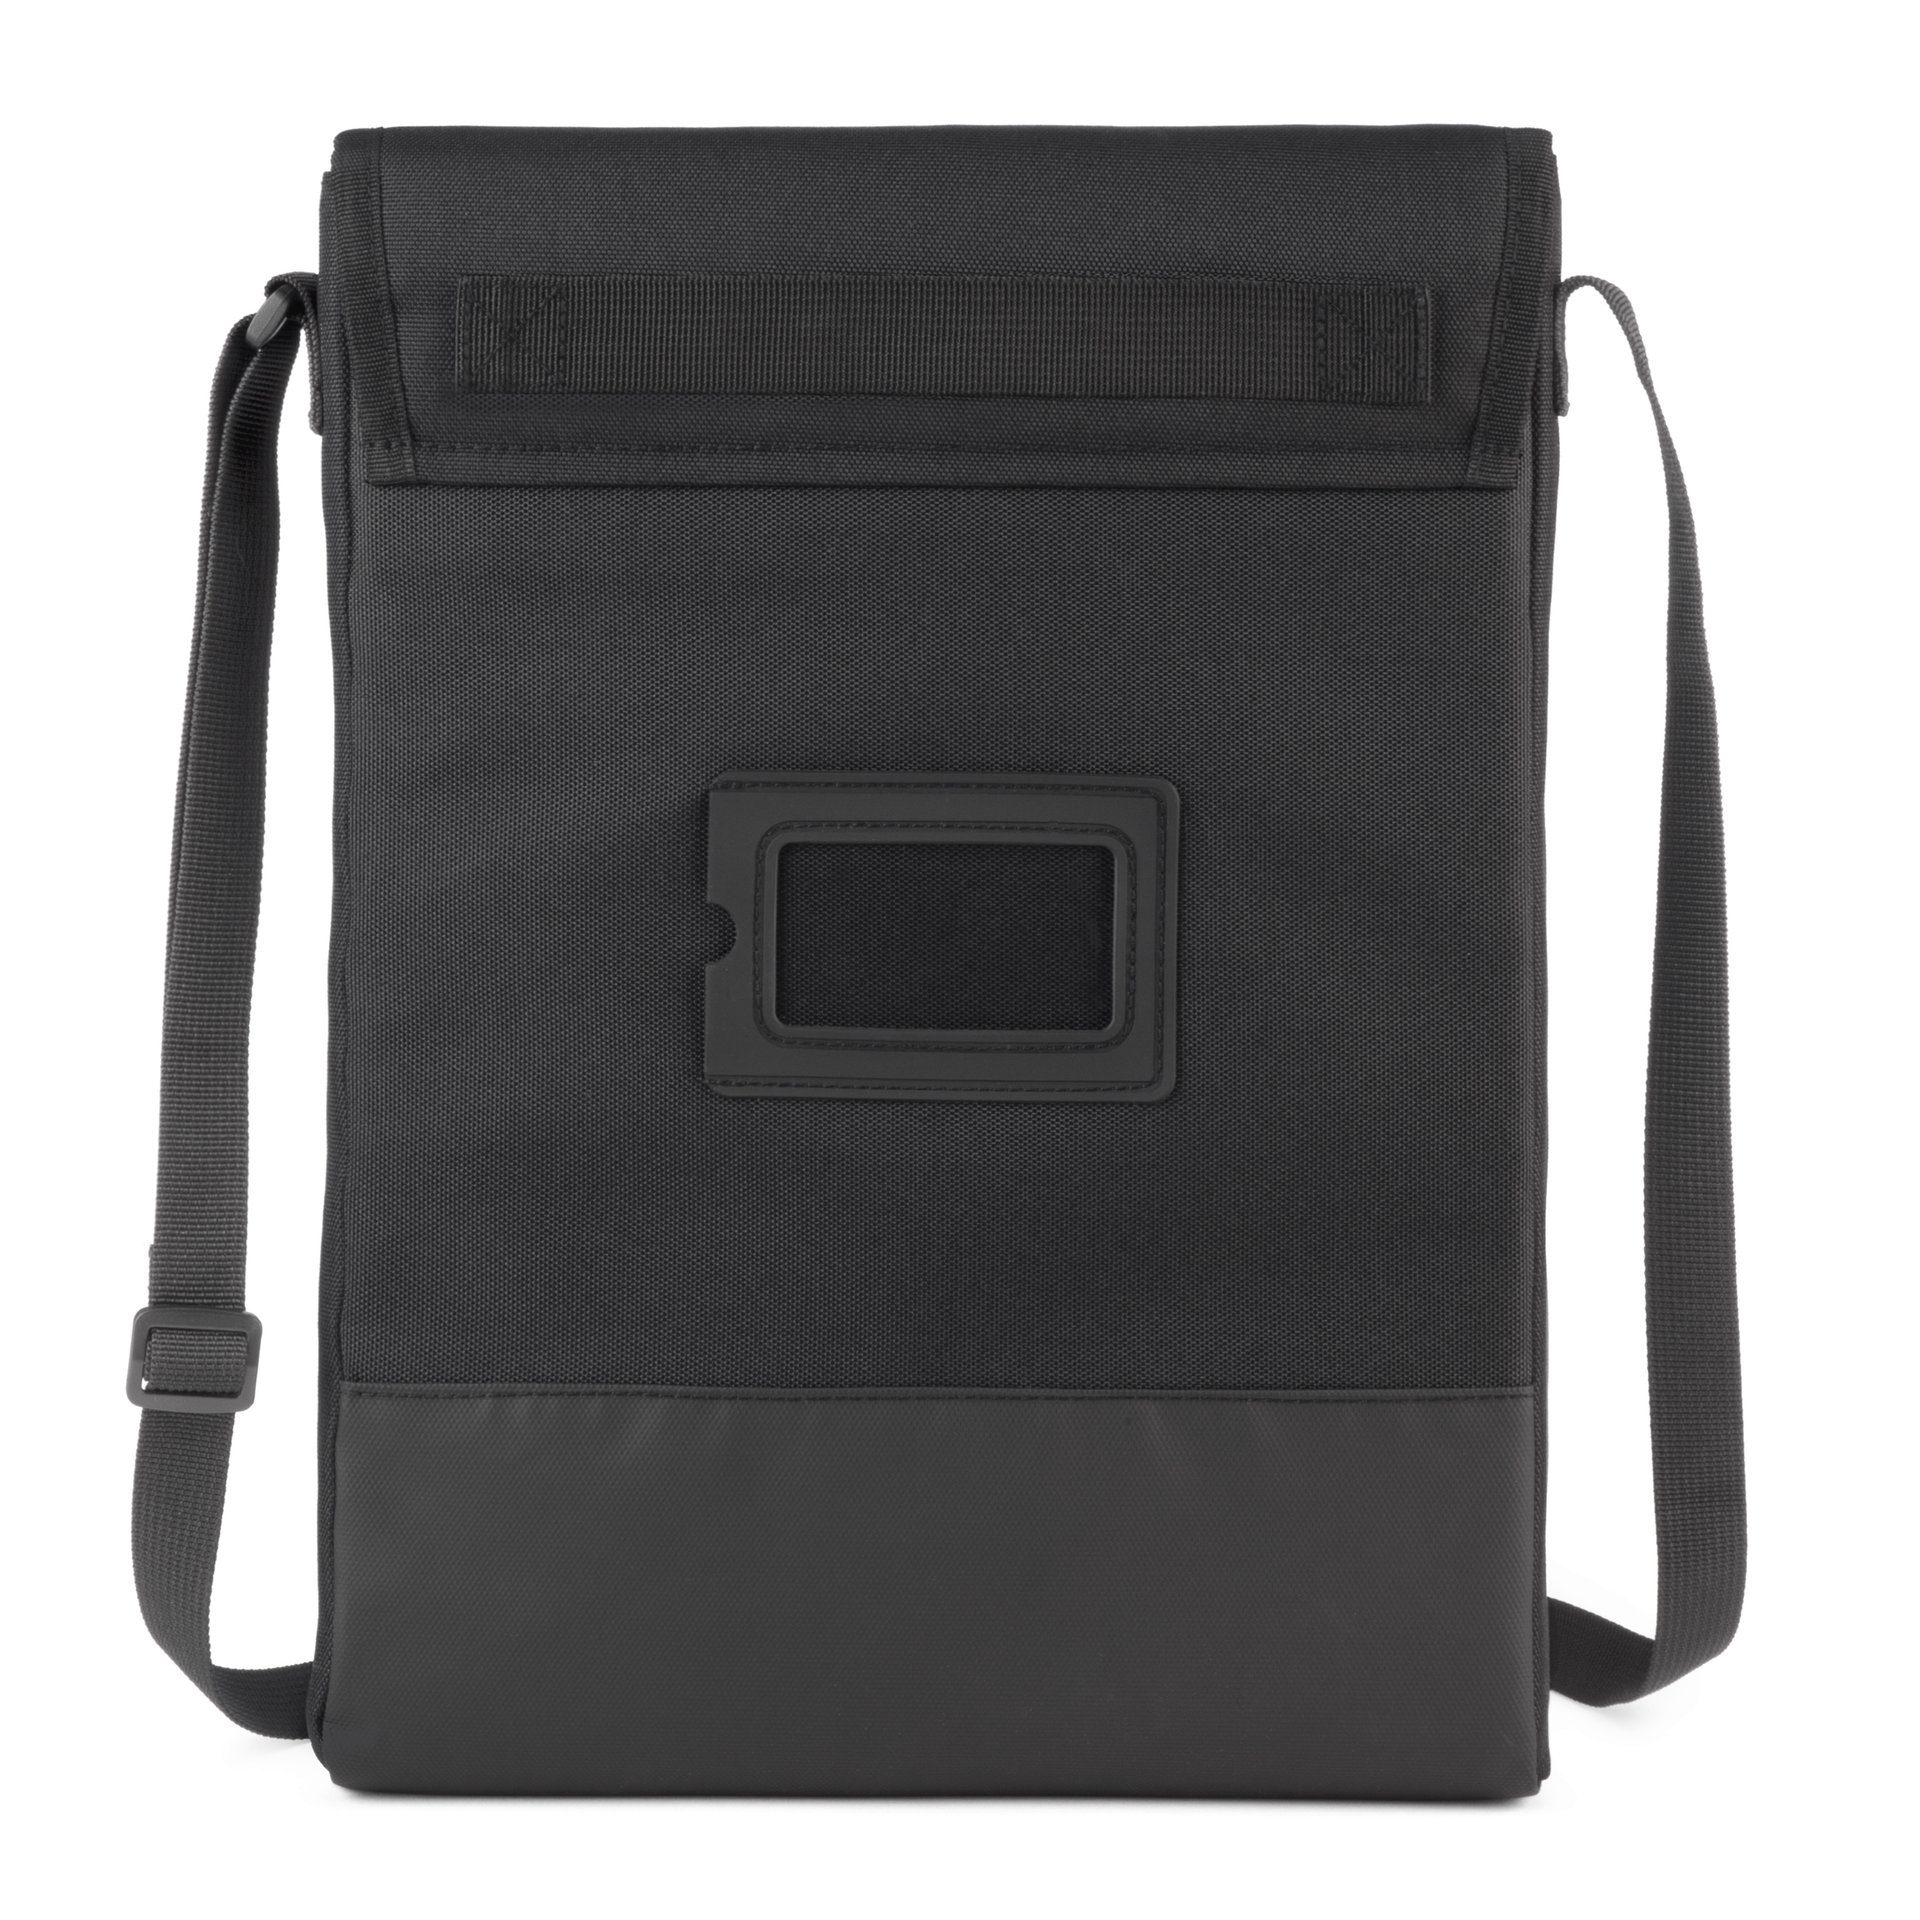 Belkin Laptoptasche Laptoptasche mit Schulterriemen für Geräte von 14-15 | Businesstaschen